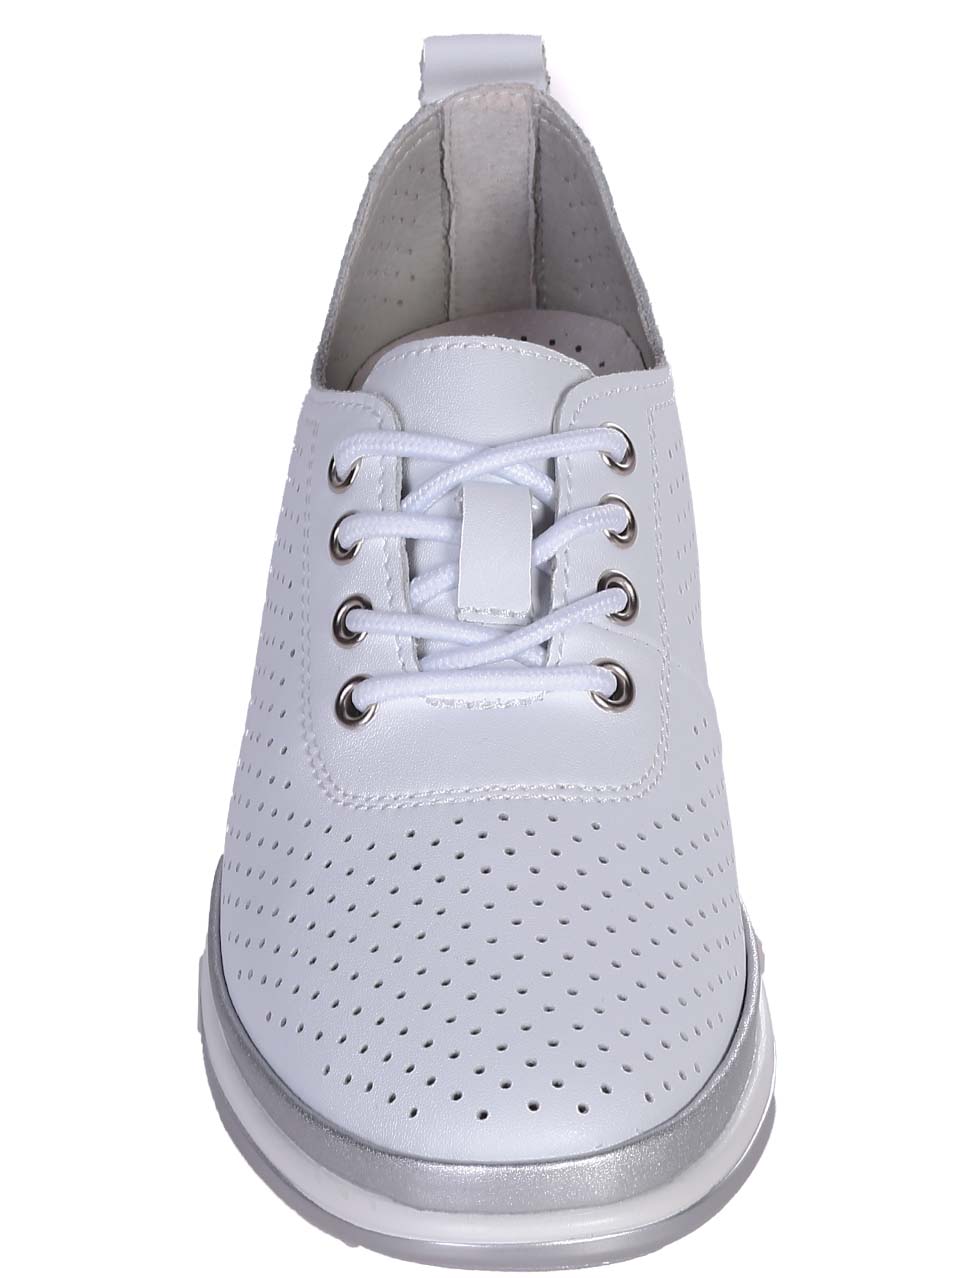 Ежедневни дамски обувки на платформа от естествена кожа в бяло 3AF-24105 white